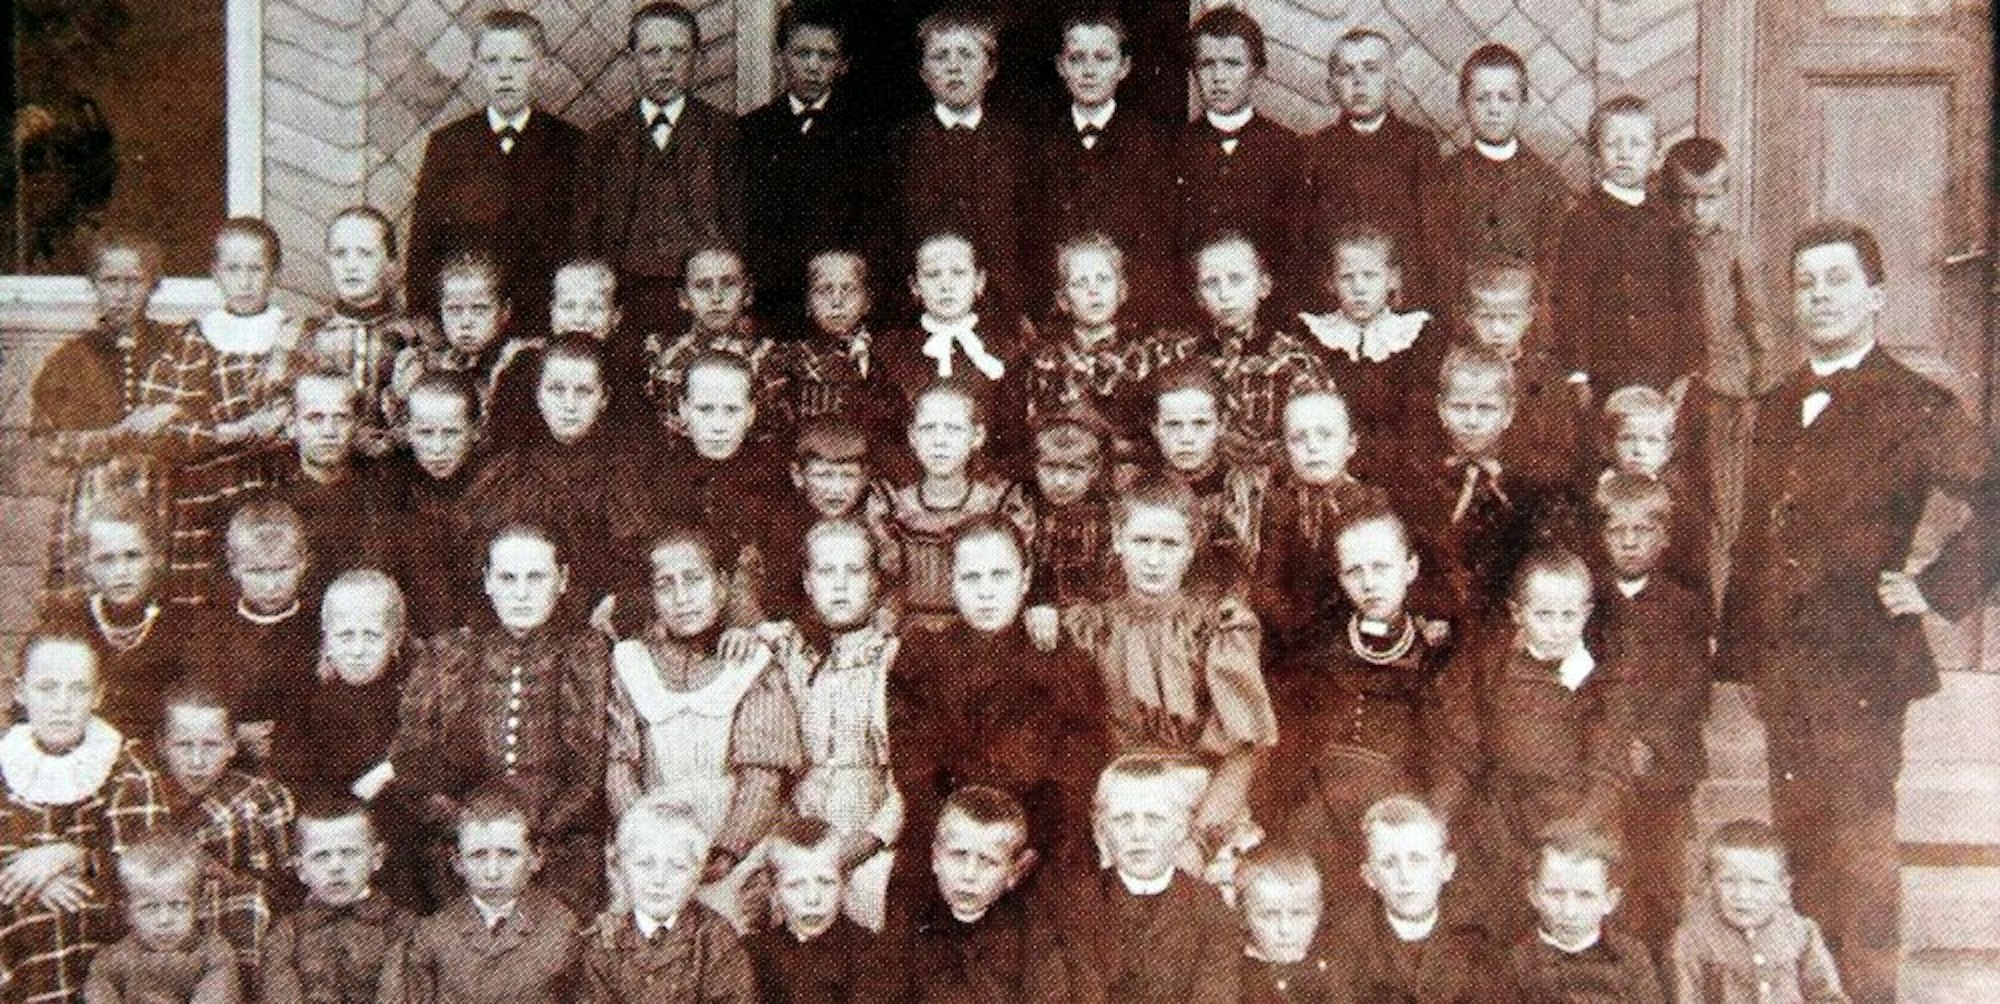 Ende des 19. Jahrhunderts: die Kinder der Volksschule Fußhollen. Ob rechts im Bild Lehrer B. posiert, bleibt unklar.